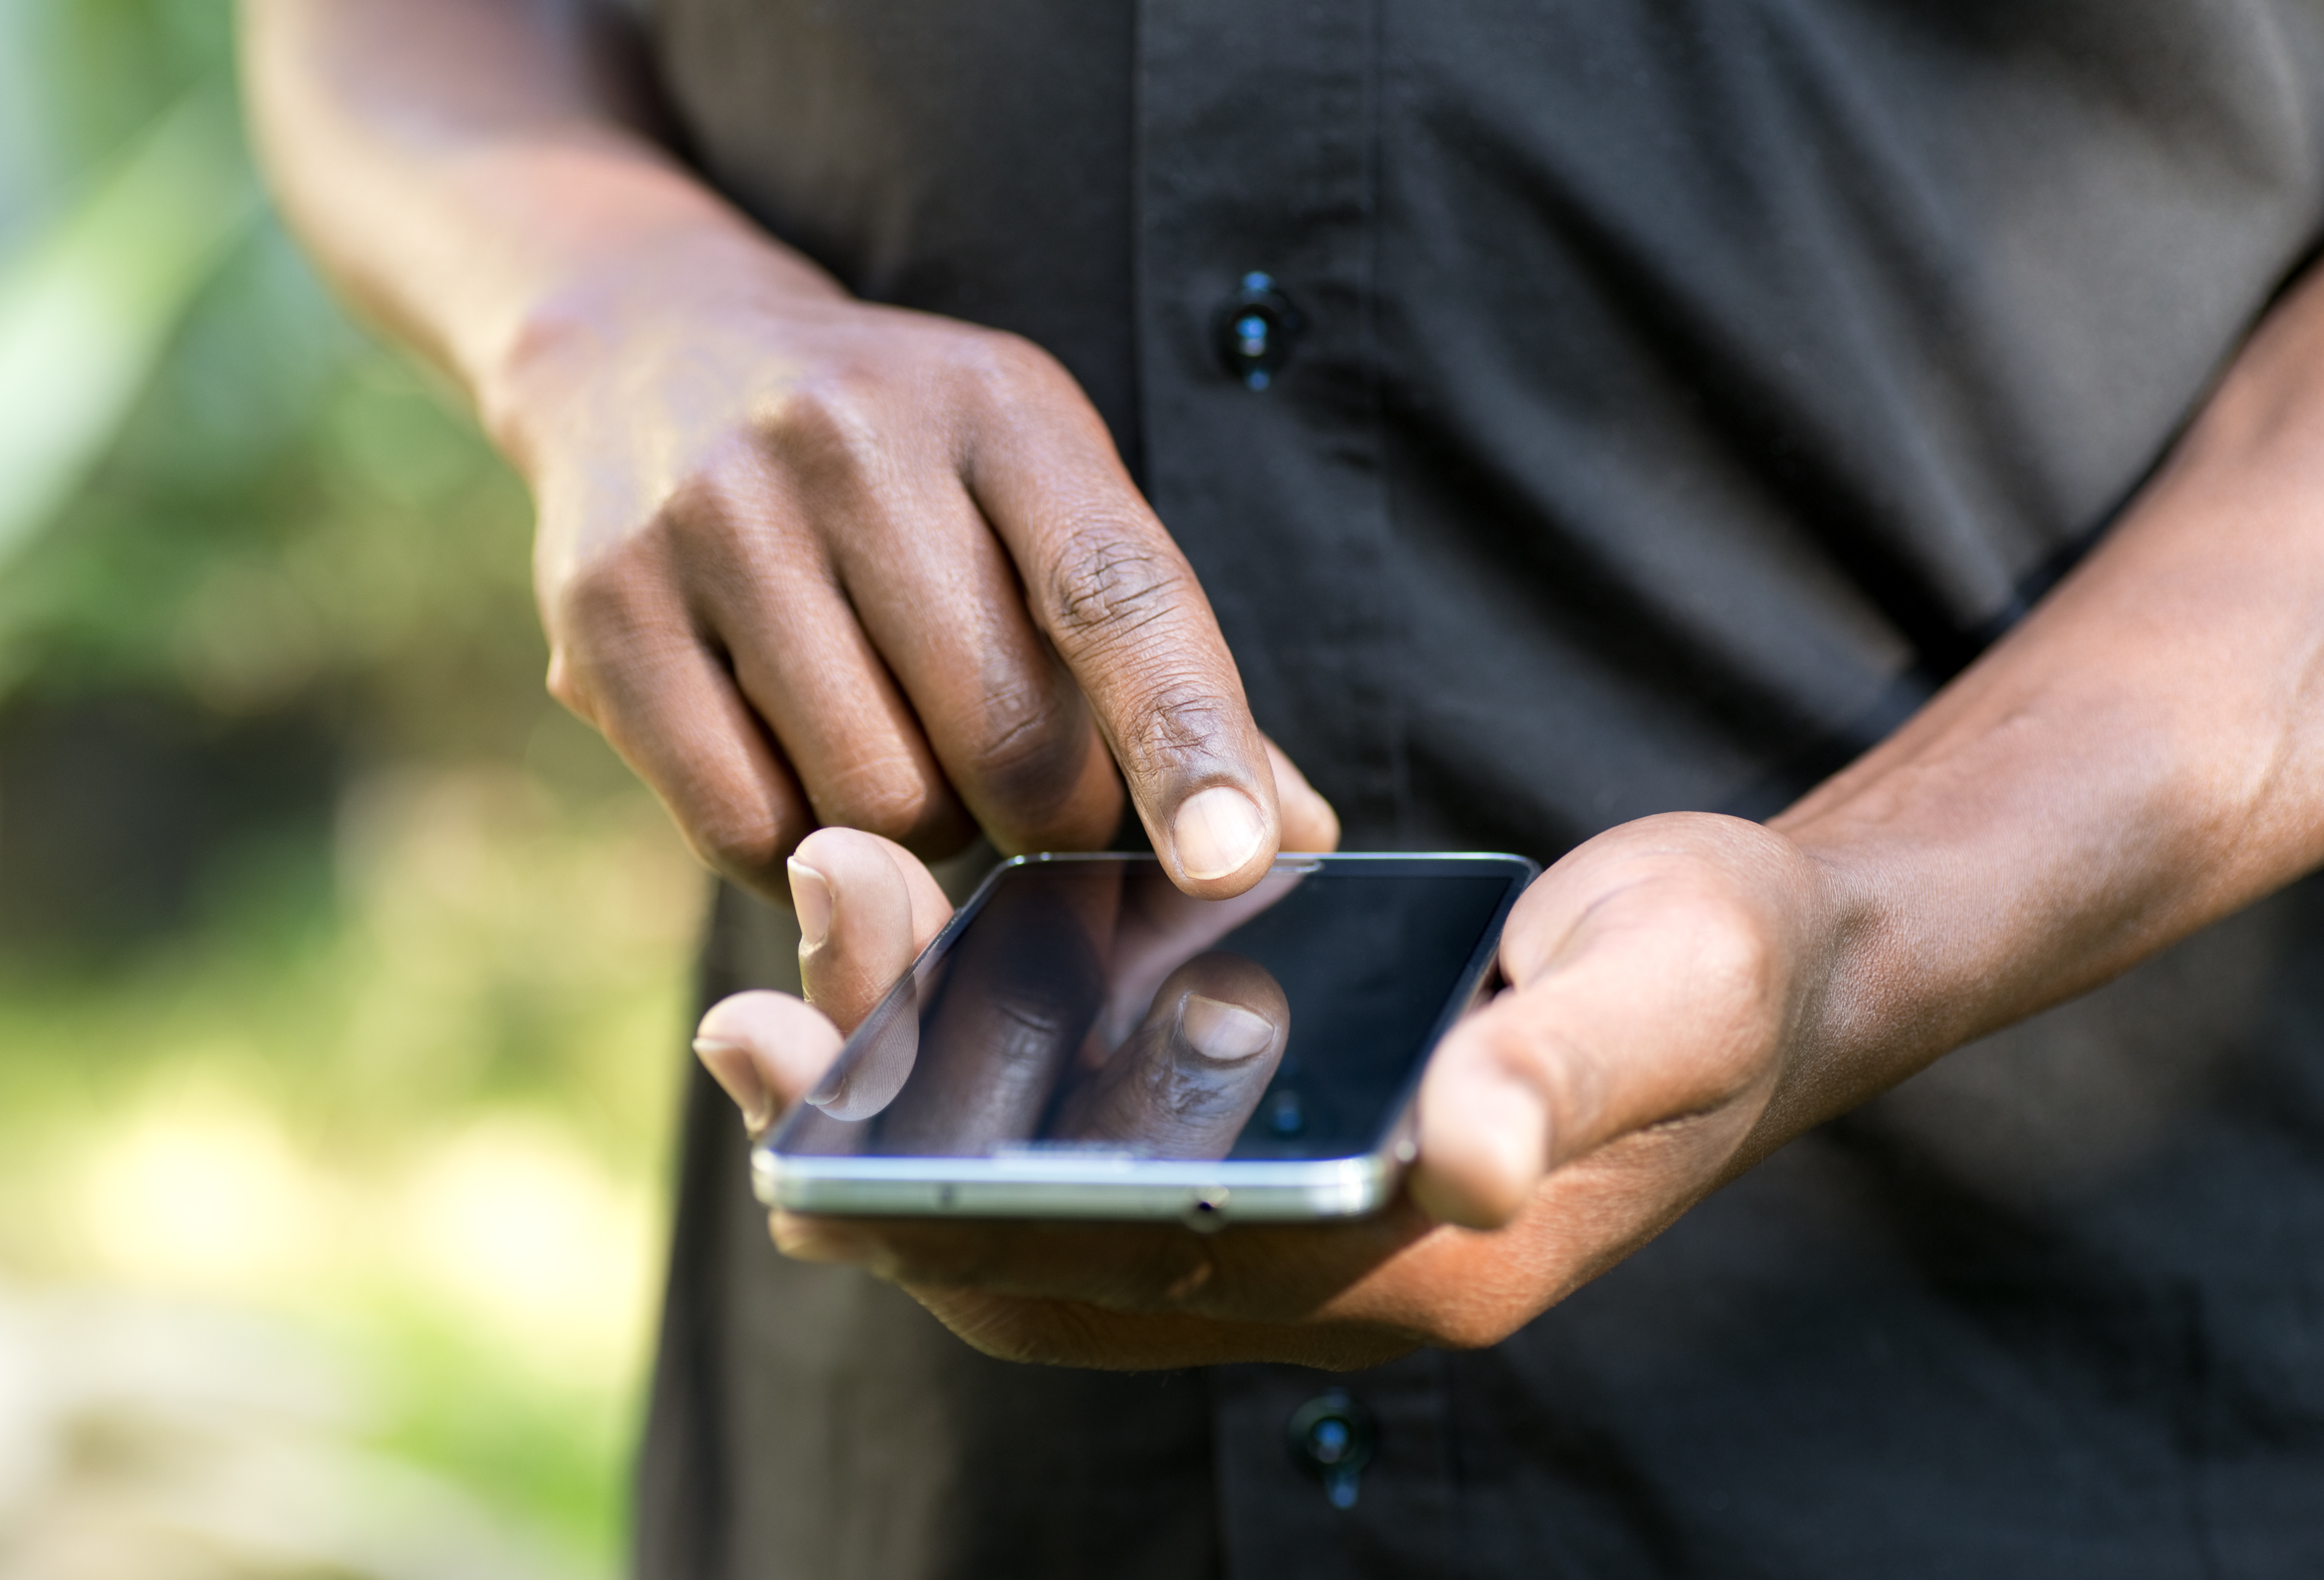     Voeux : les messageries mobiles plébiscitées mais les SMS font de la résistance 

